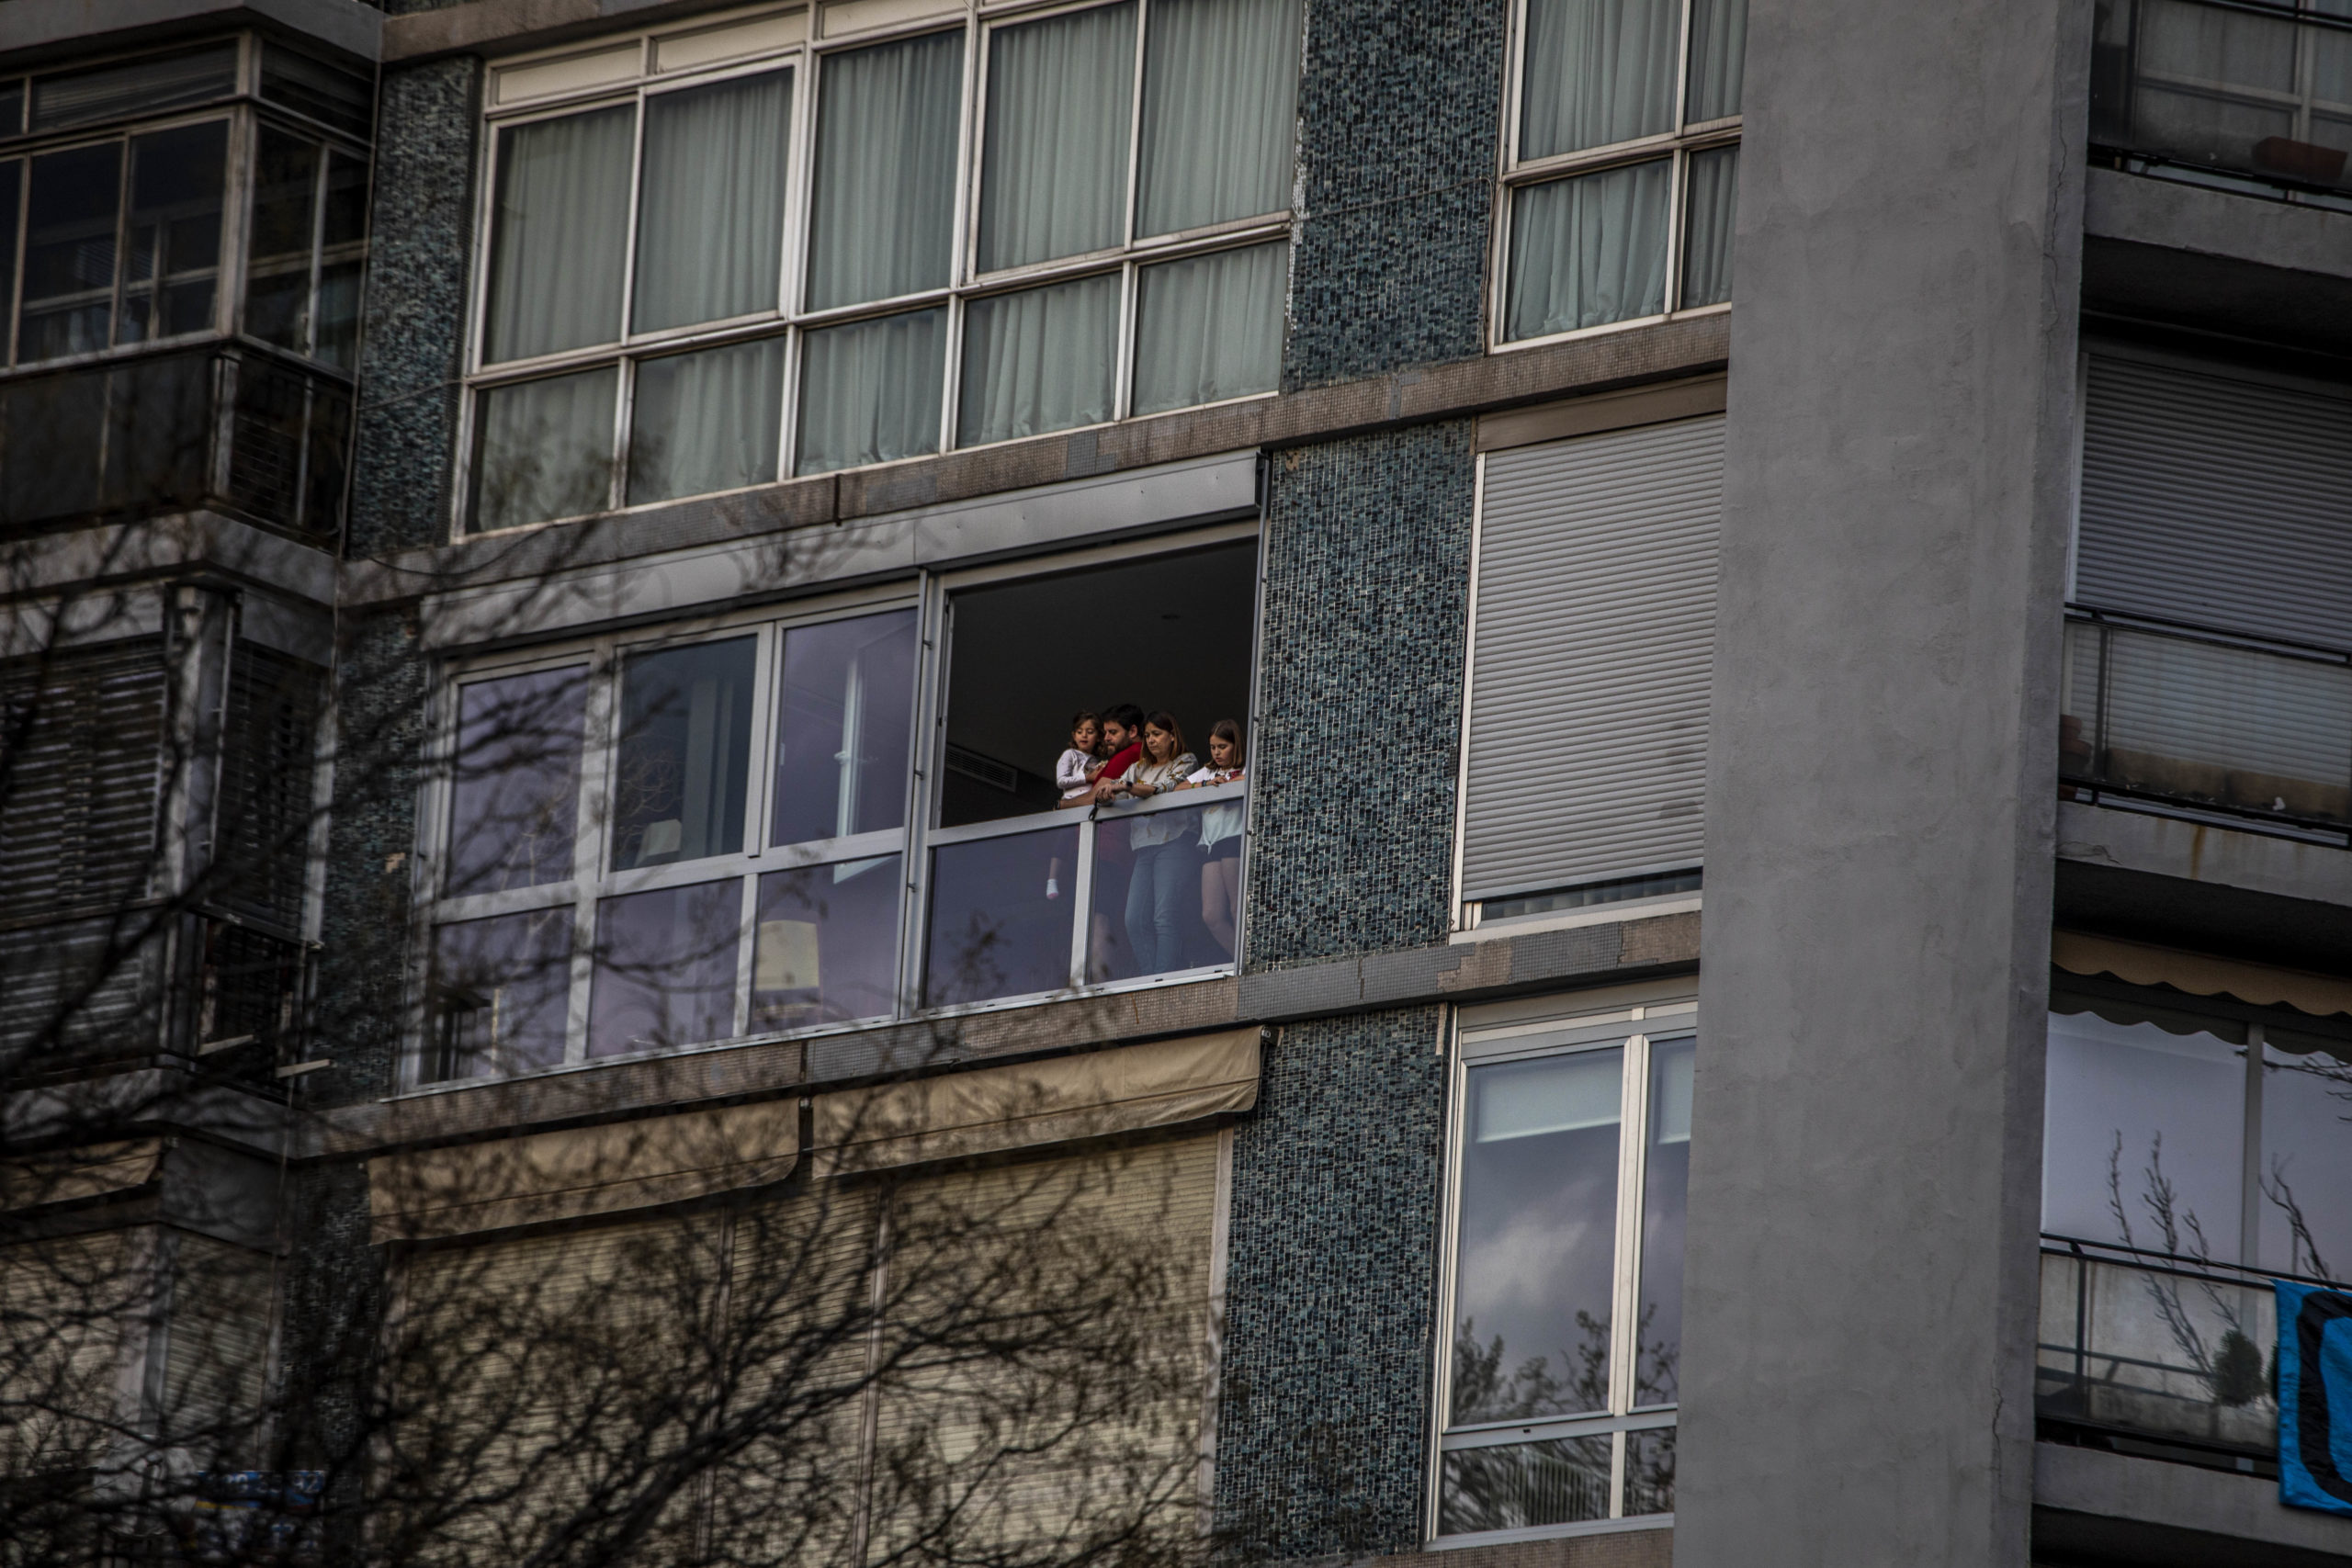 Familia en el balcón durante el aplauso diario a los profesionales sanitarios. Foto de Bruno Thevenin.